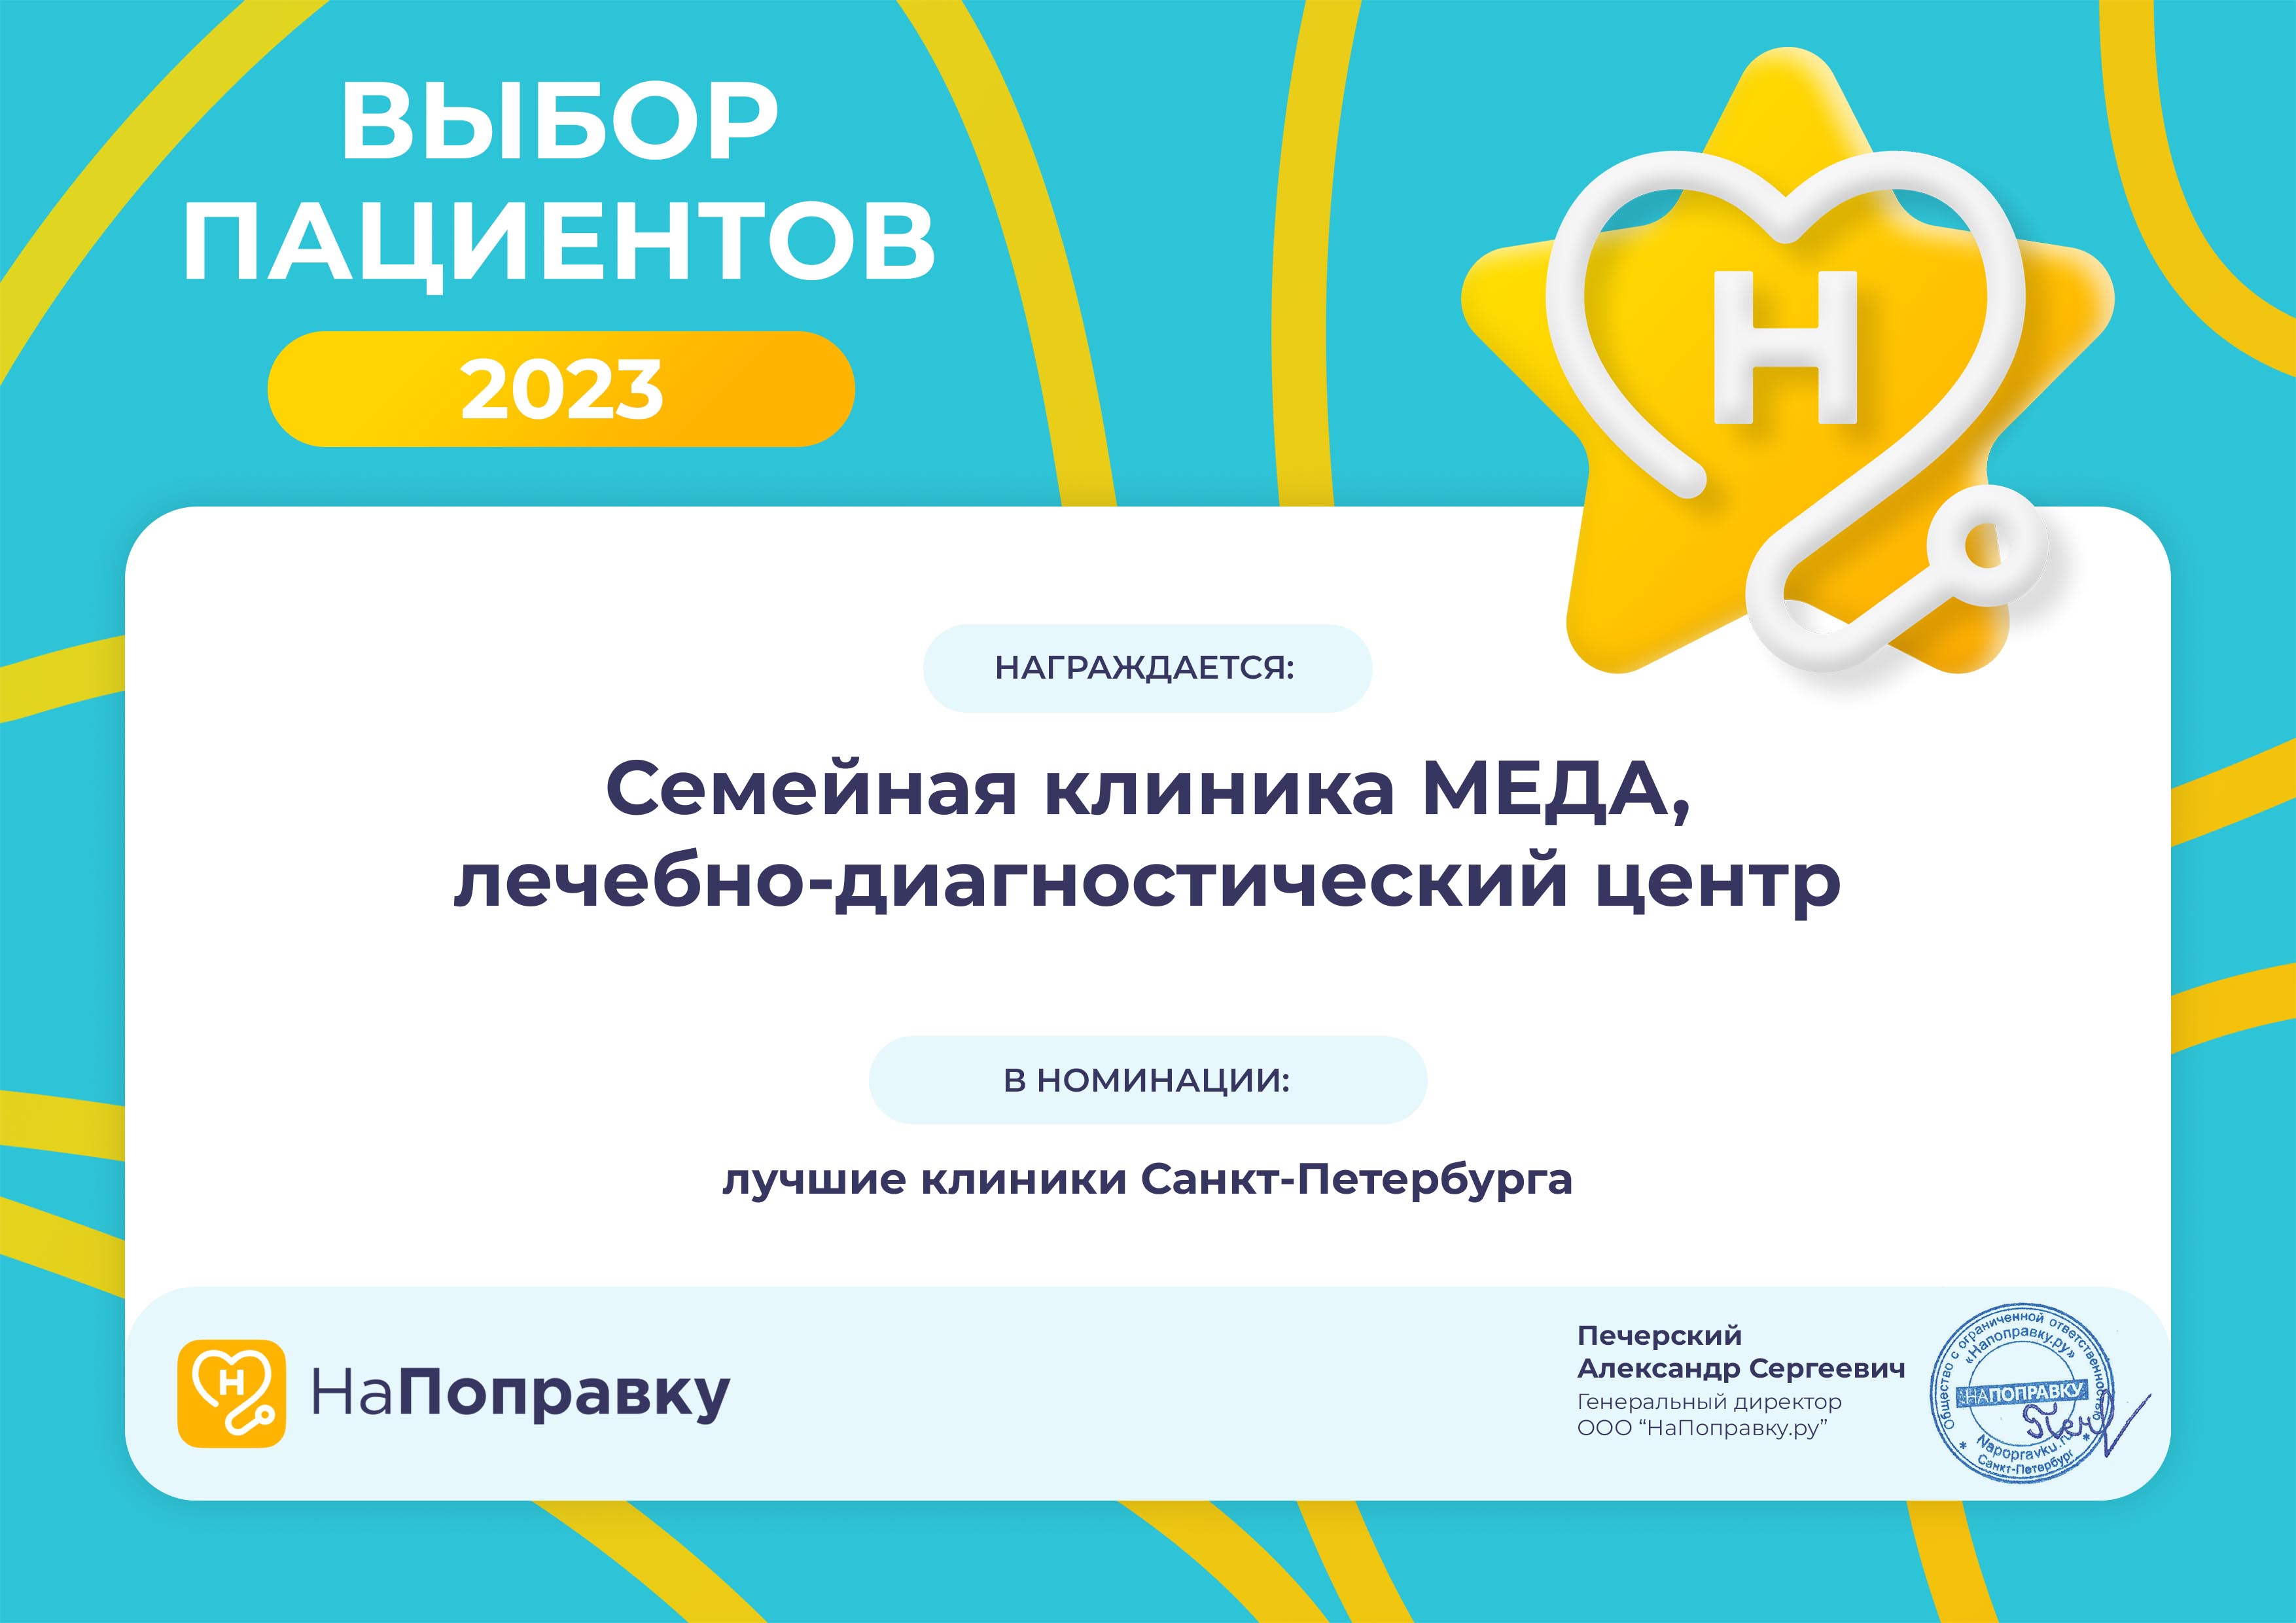 Семейная клиника МЕДА - победитель 2023 среди частных клиник Санкт-Петербурга